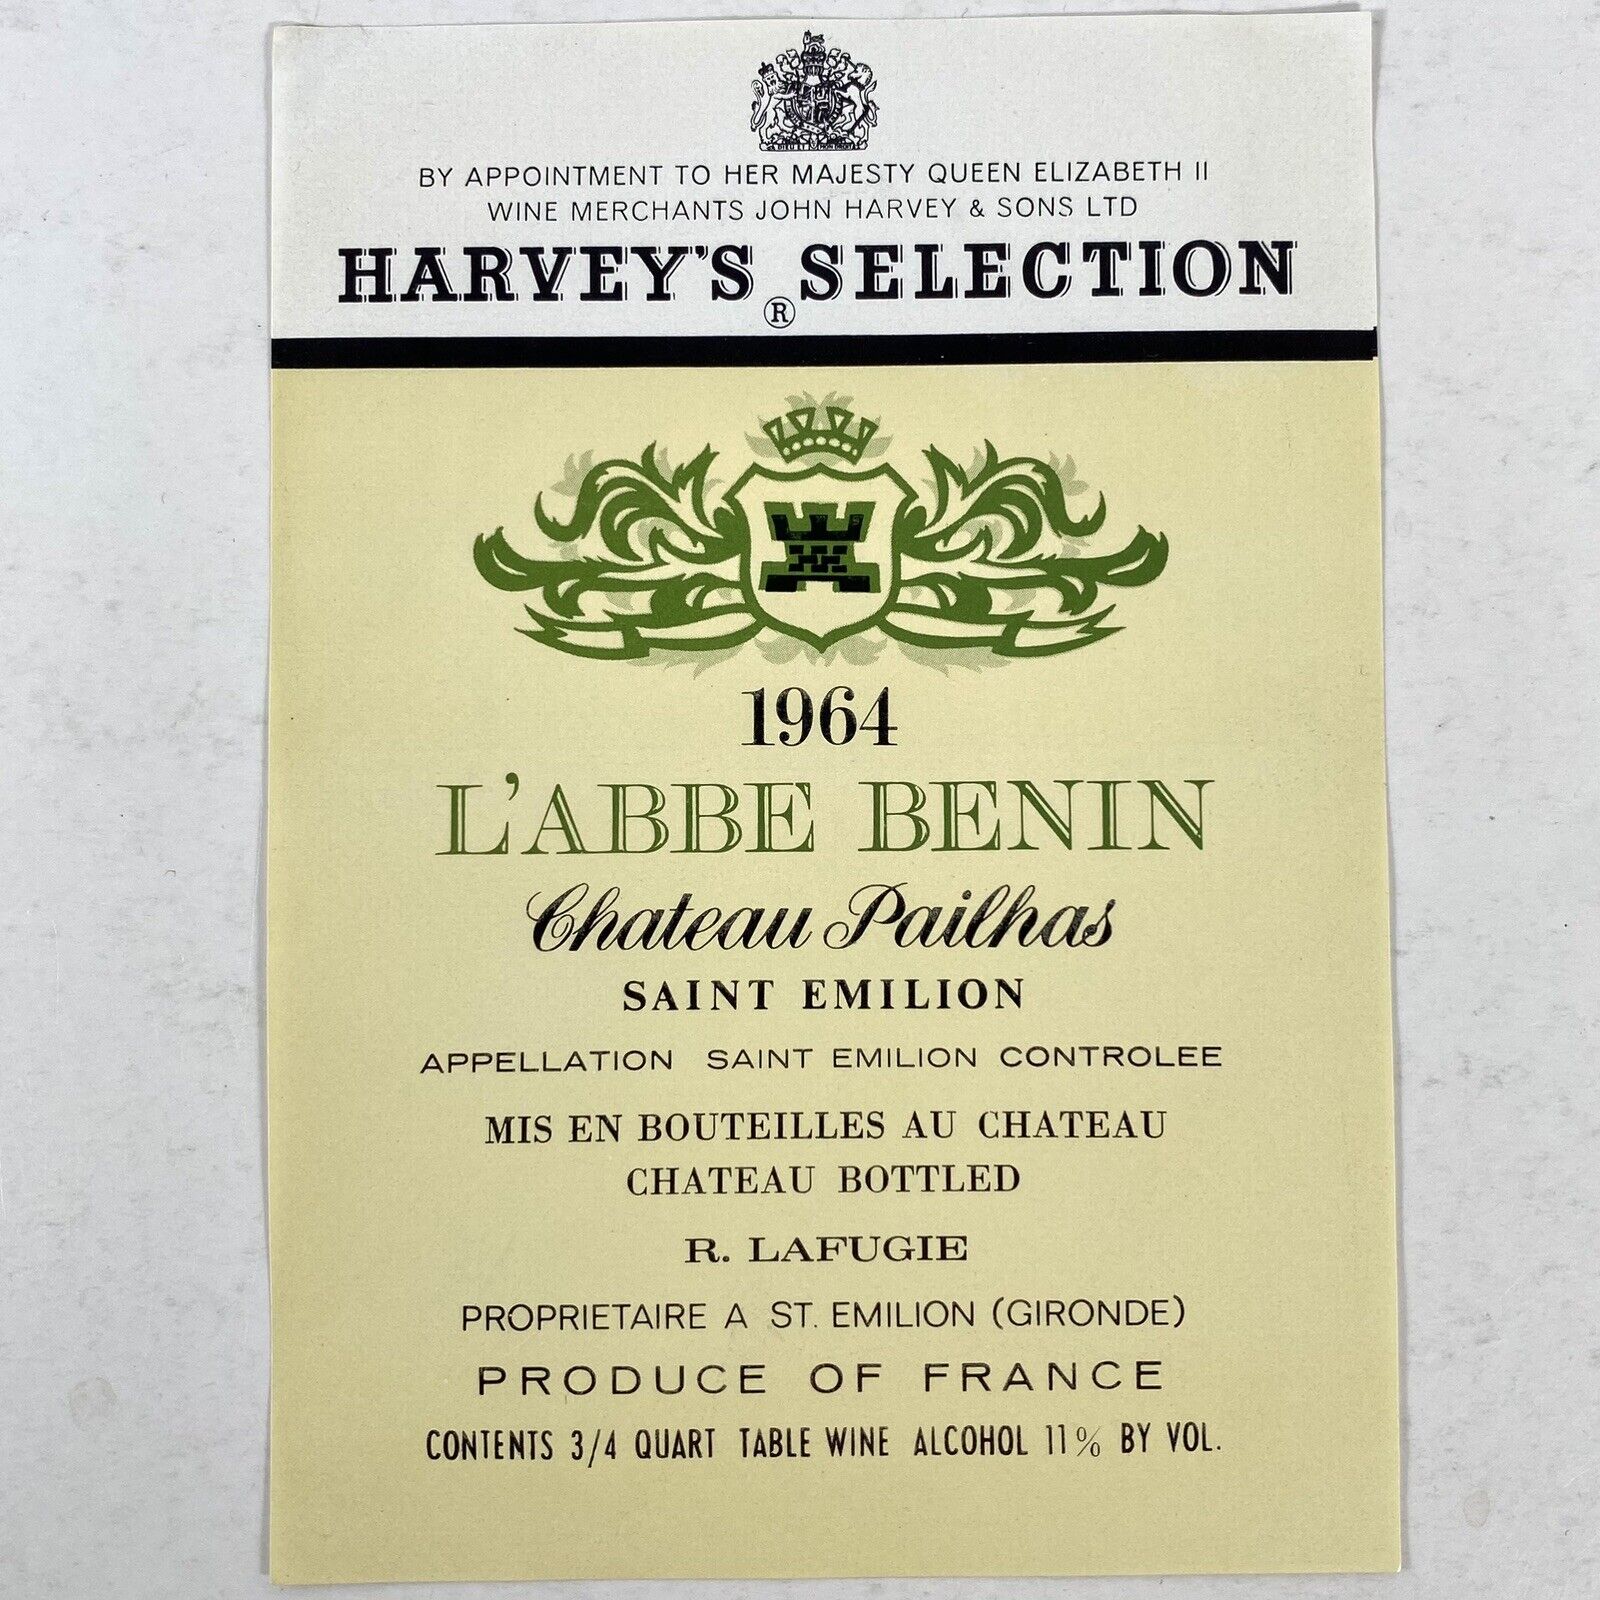 Harvey’s Selection L’Abbe Benin Chateau Pailhas Vintage 1964 Wine Paper Label